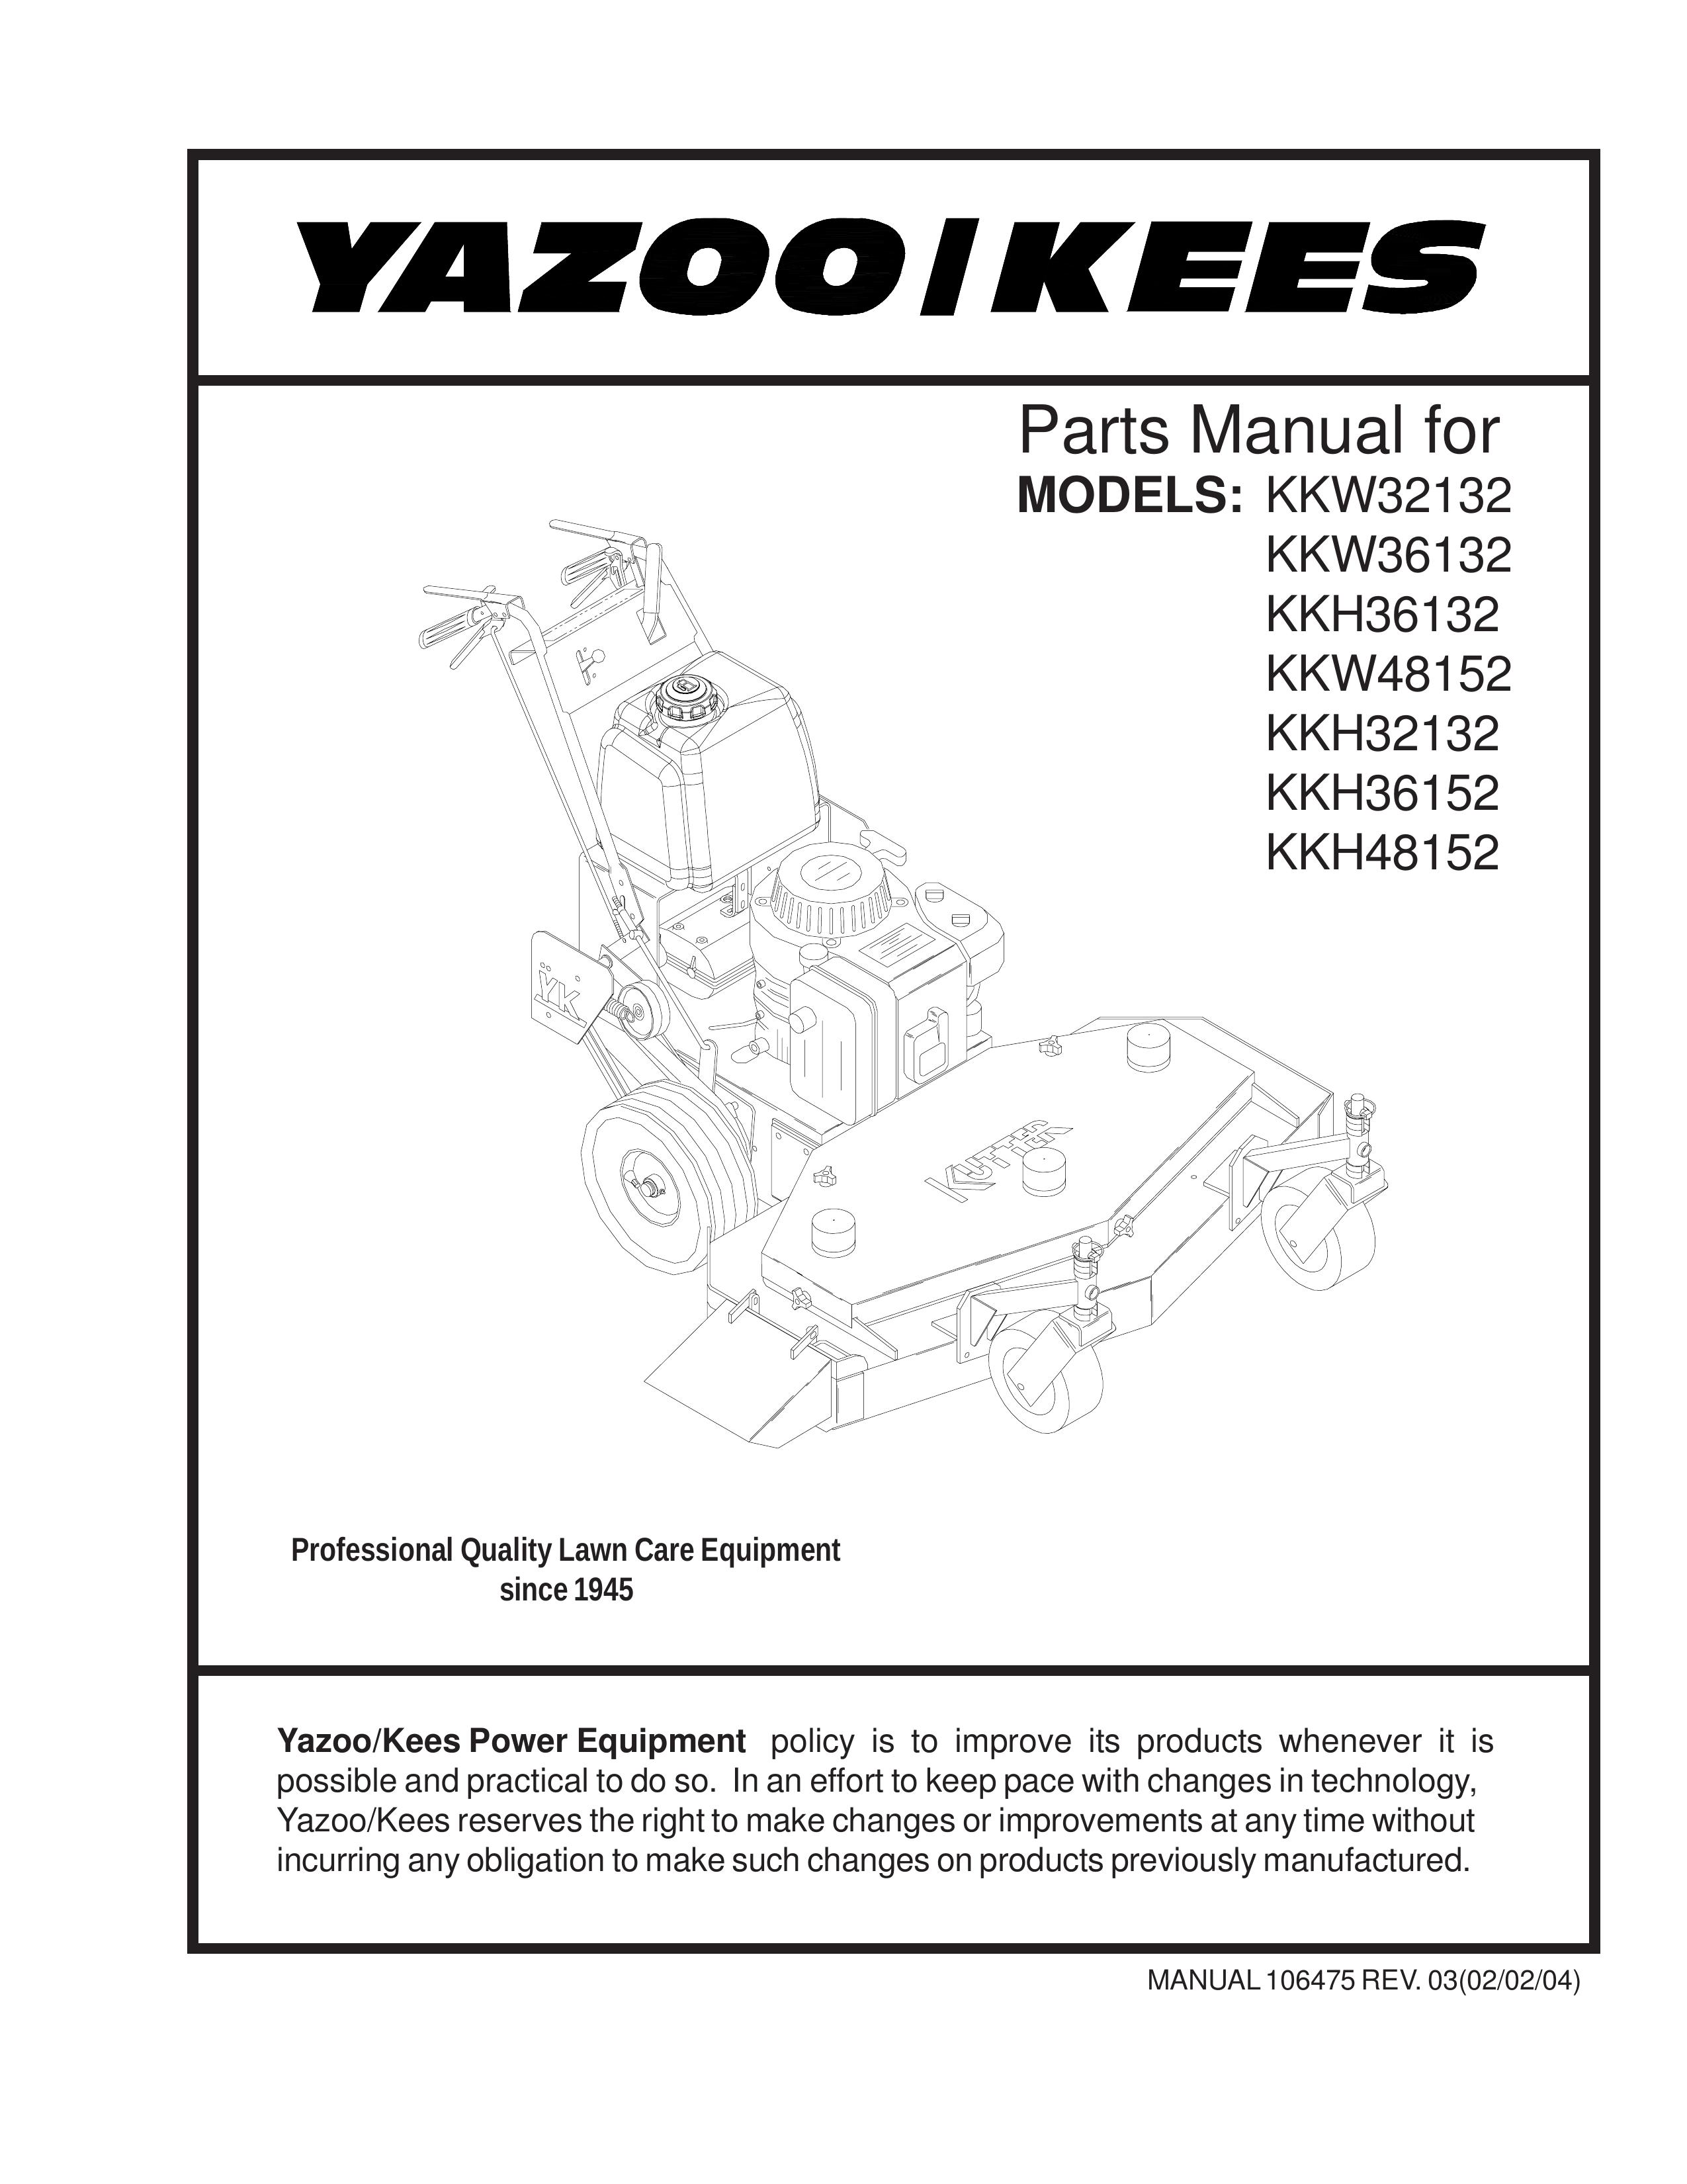 Yazoo/Kees KKH48152 Lawn Mower User Manual